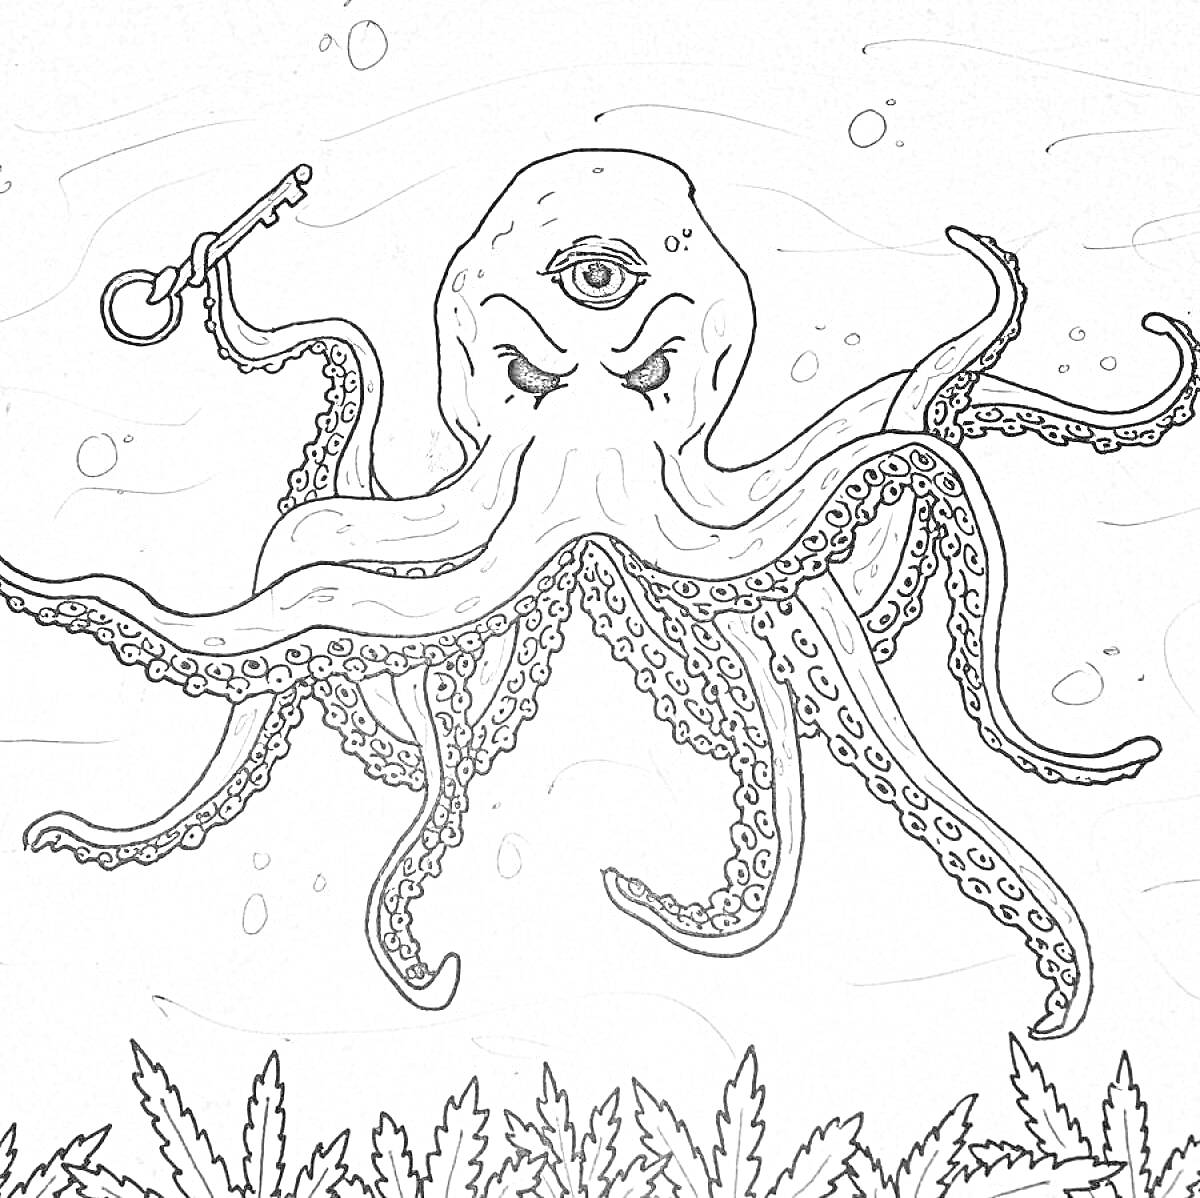 Раскраска Кракен с одним глазом и злобным выражением лица, держащий в щупальце ключ, на дне океана среди водорослей и пузыриков.